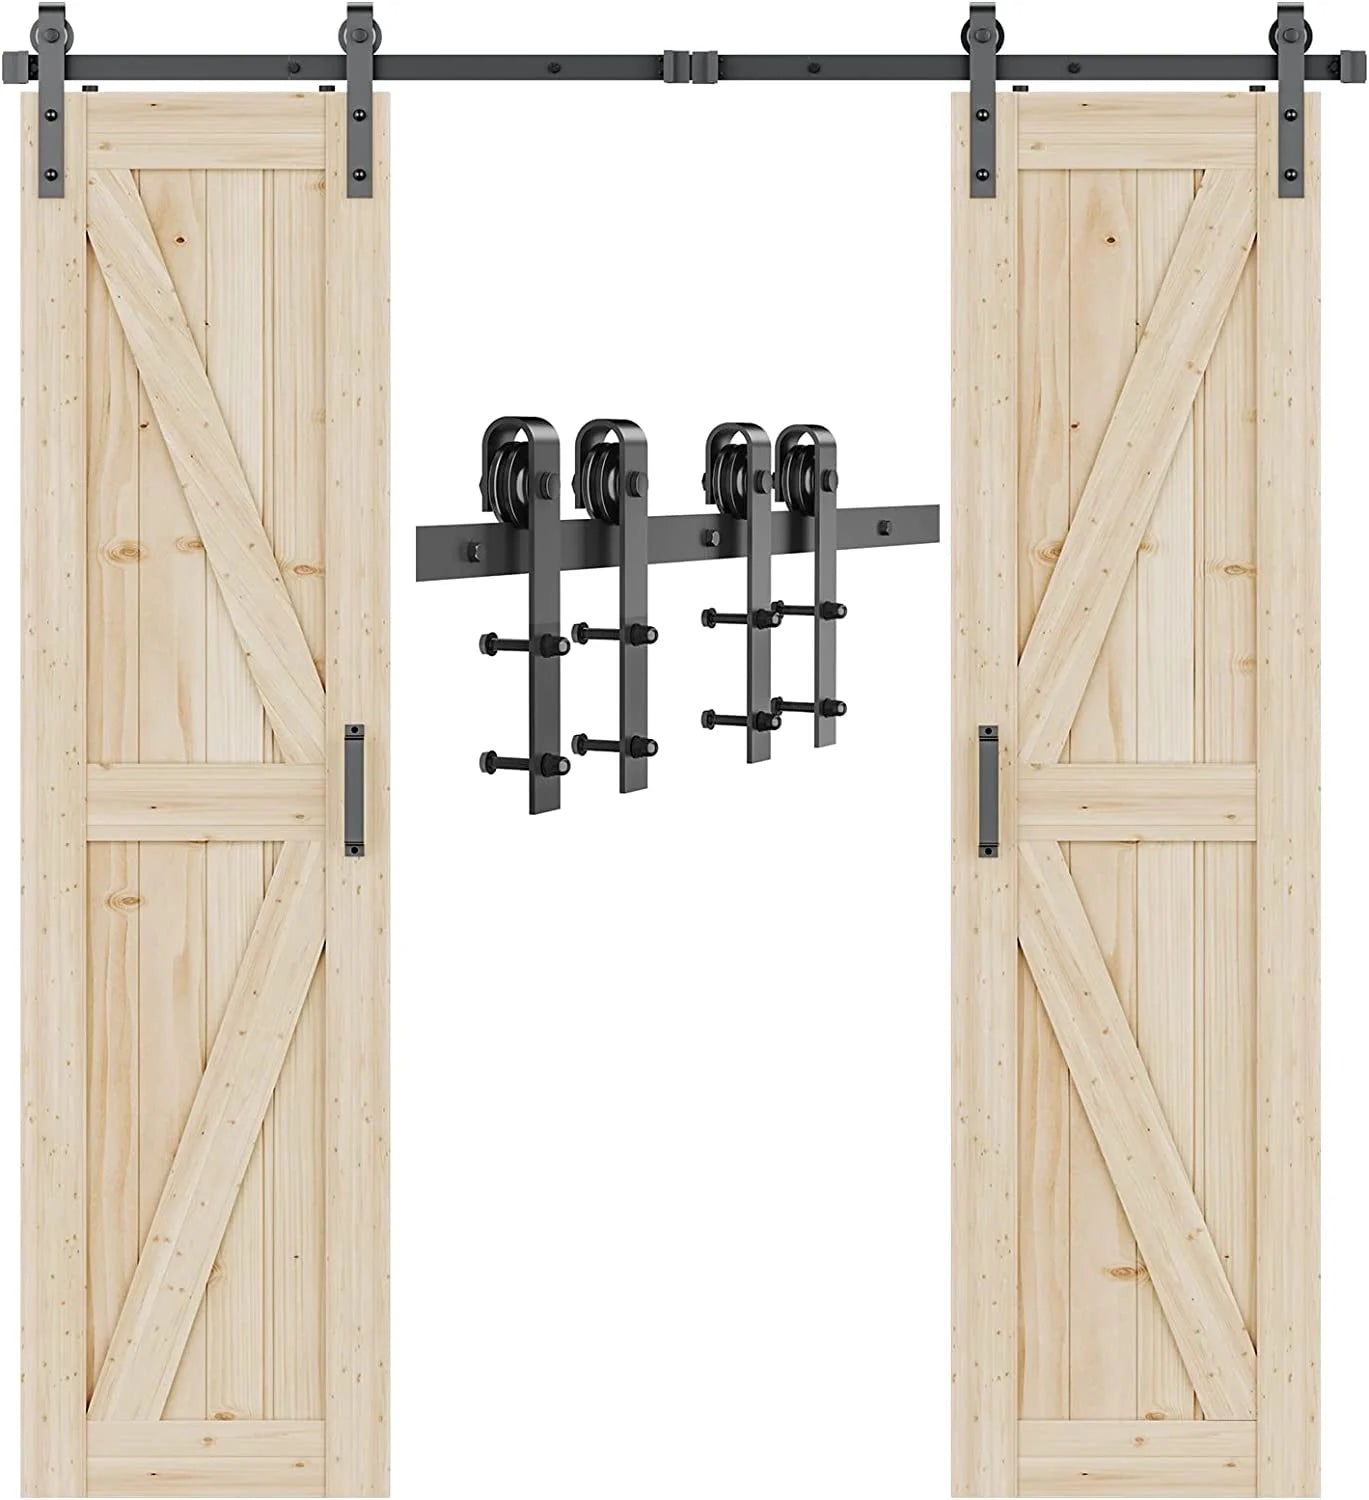 Modern Double Sliding Barn Door Hardware Kit -J Shape Hanger